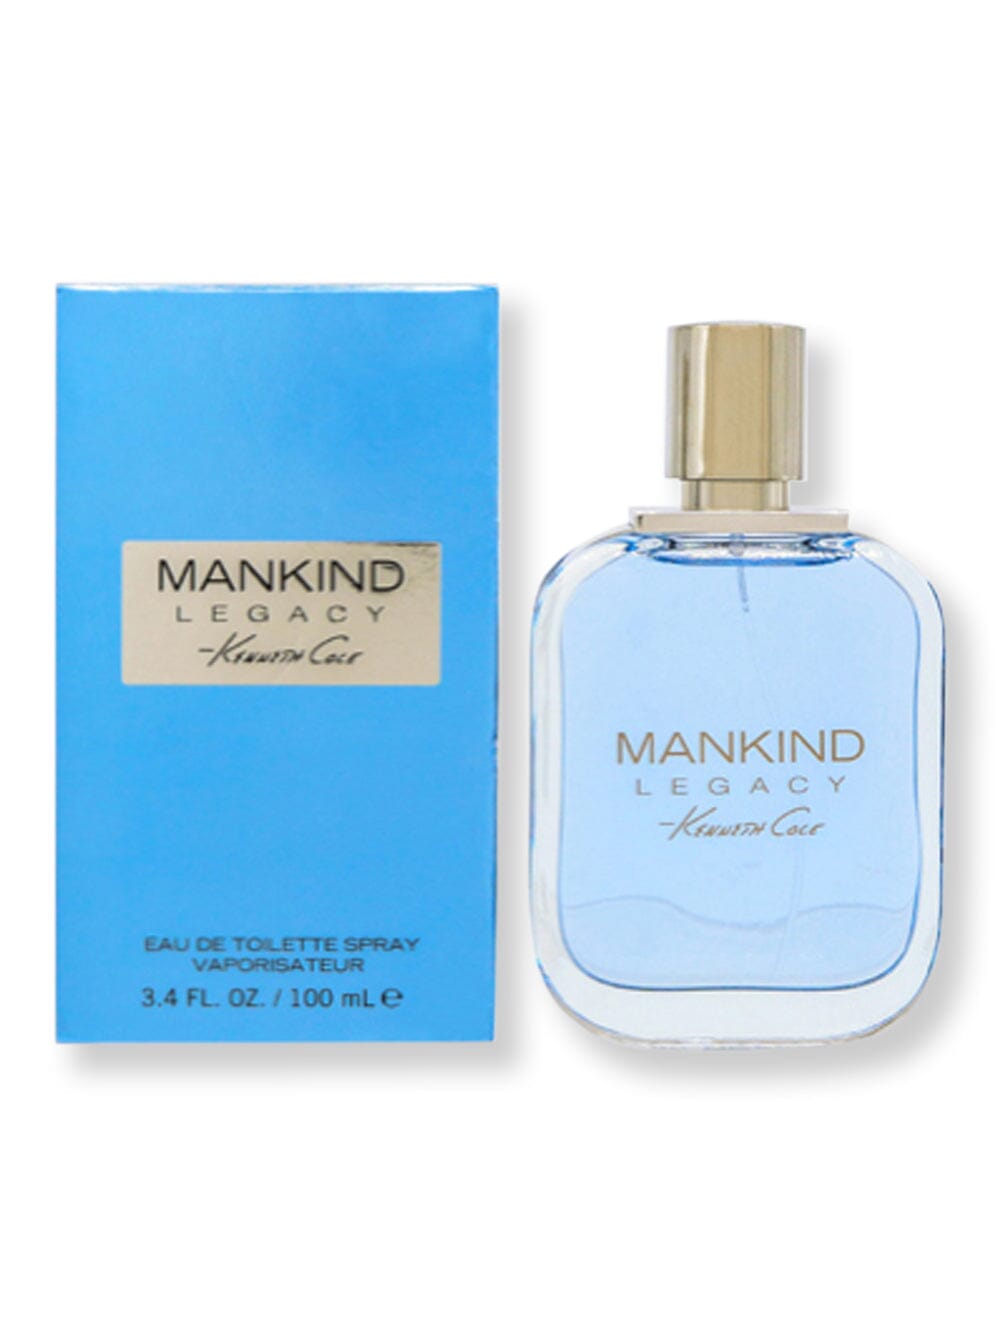 Kenneth Cole Kenneth Cole Mankind Legacy EDT Spray 3.4 oz100 ml Perfume 